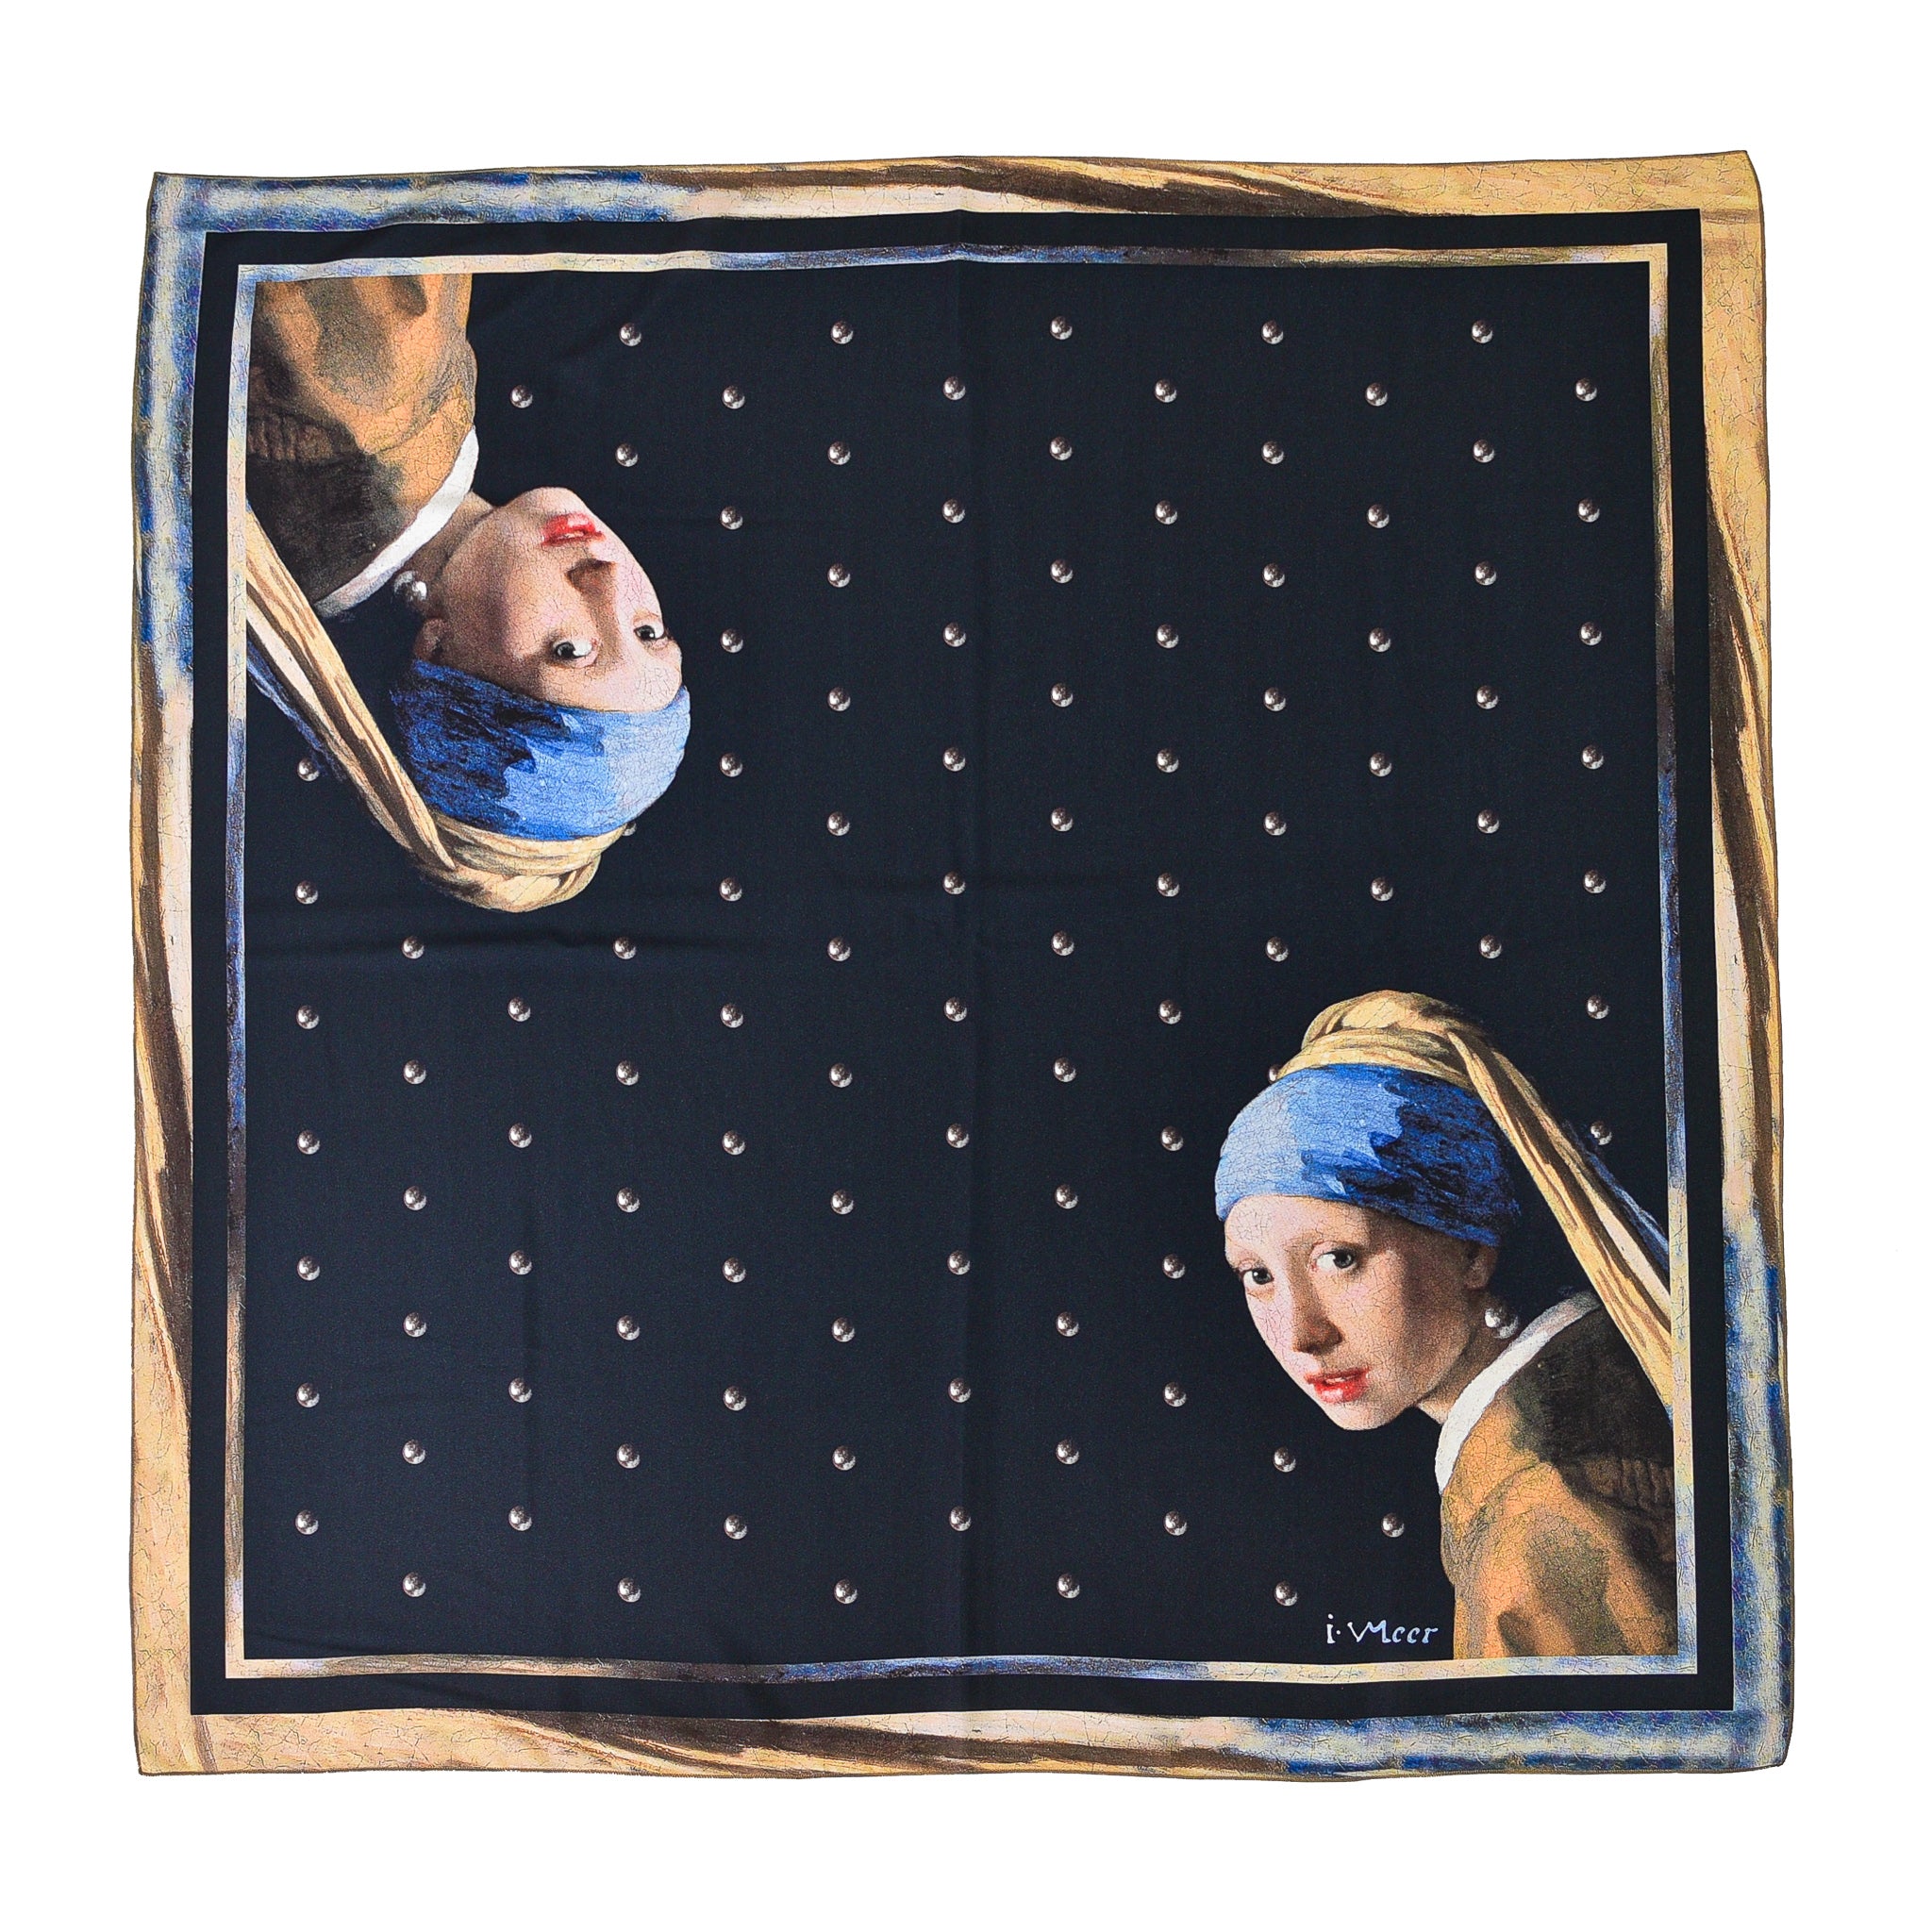 Skarelė Johannes Vermeer "Girl with a Pearl earring"